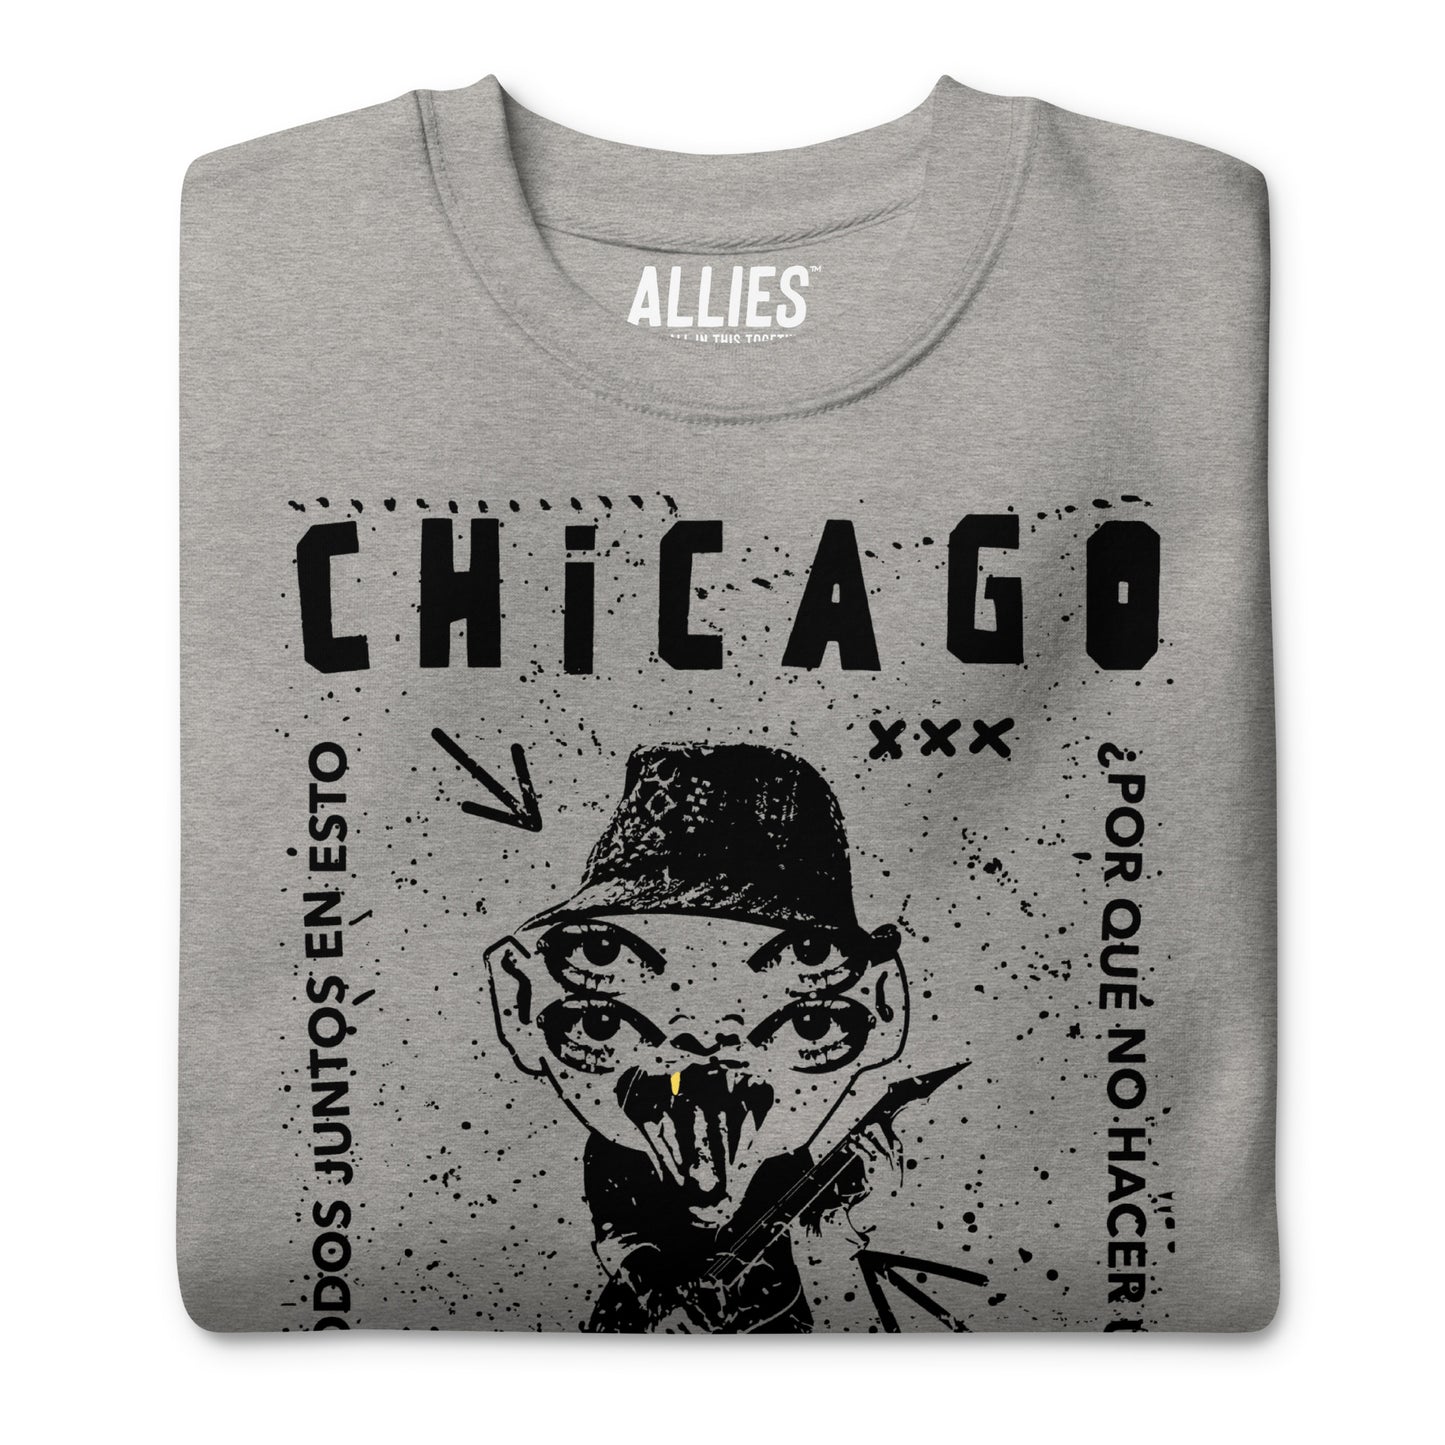 Chicago Punk Sweatshirt